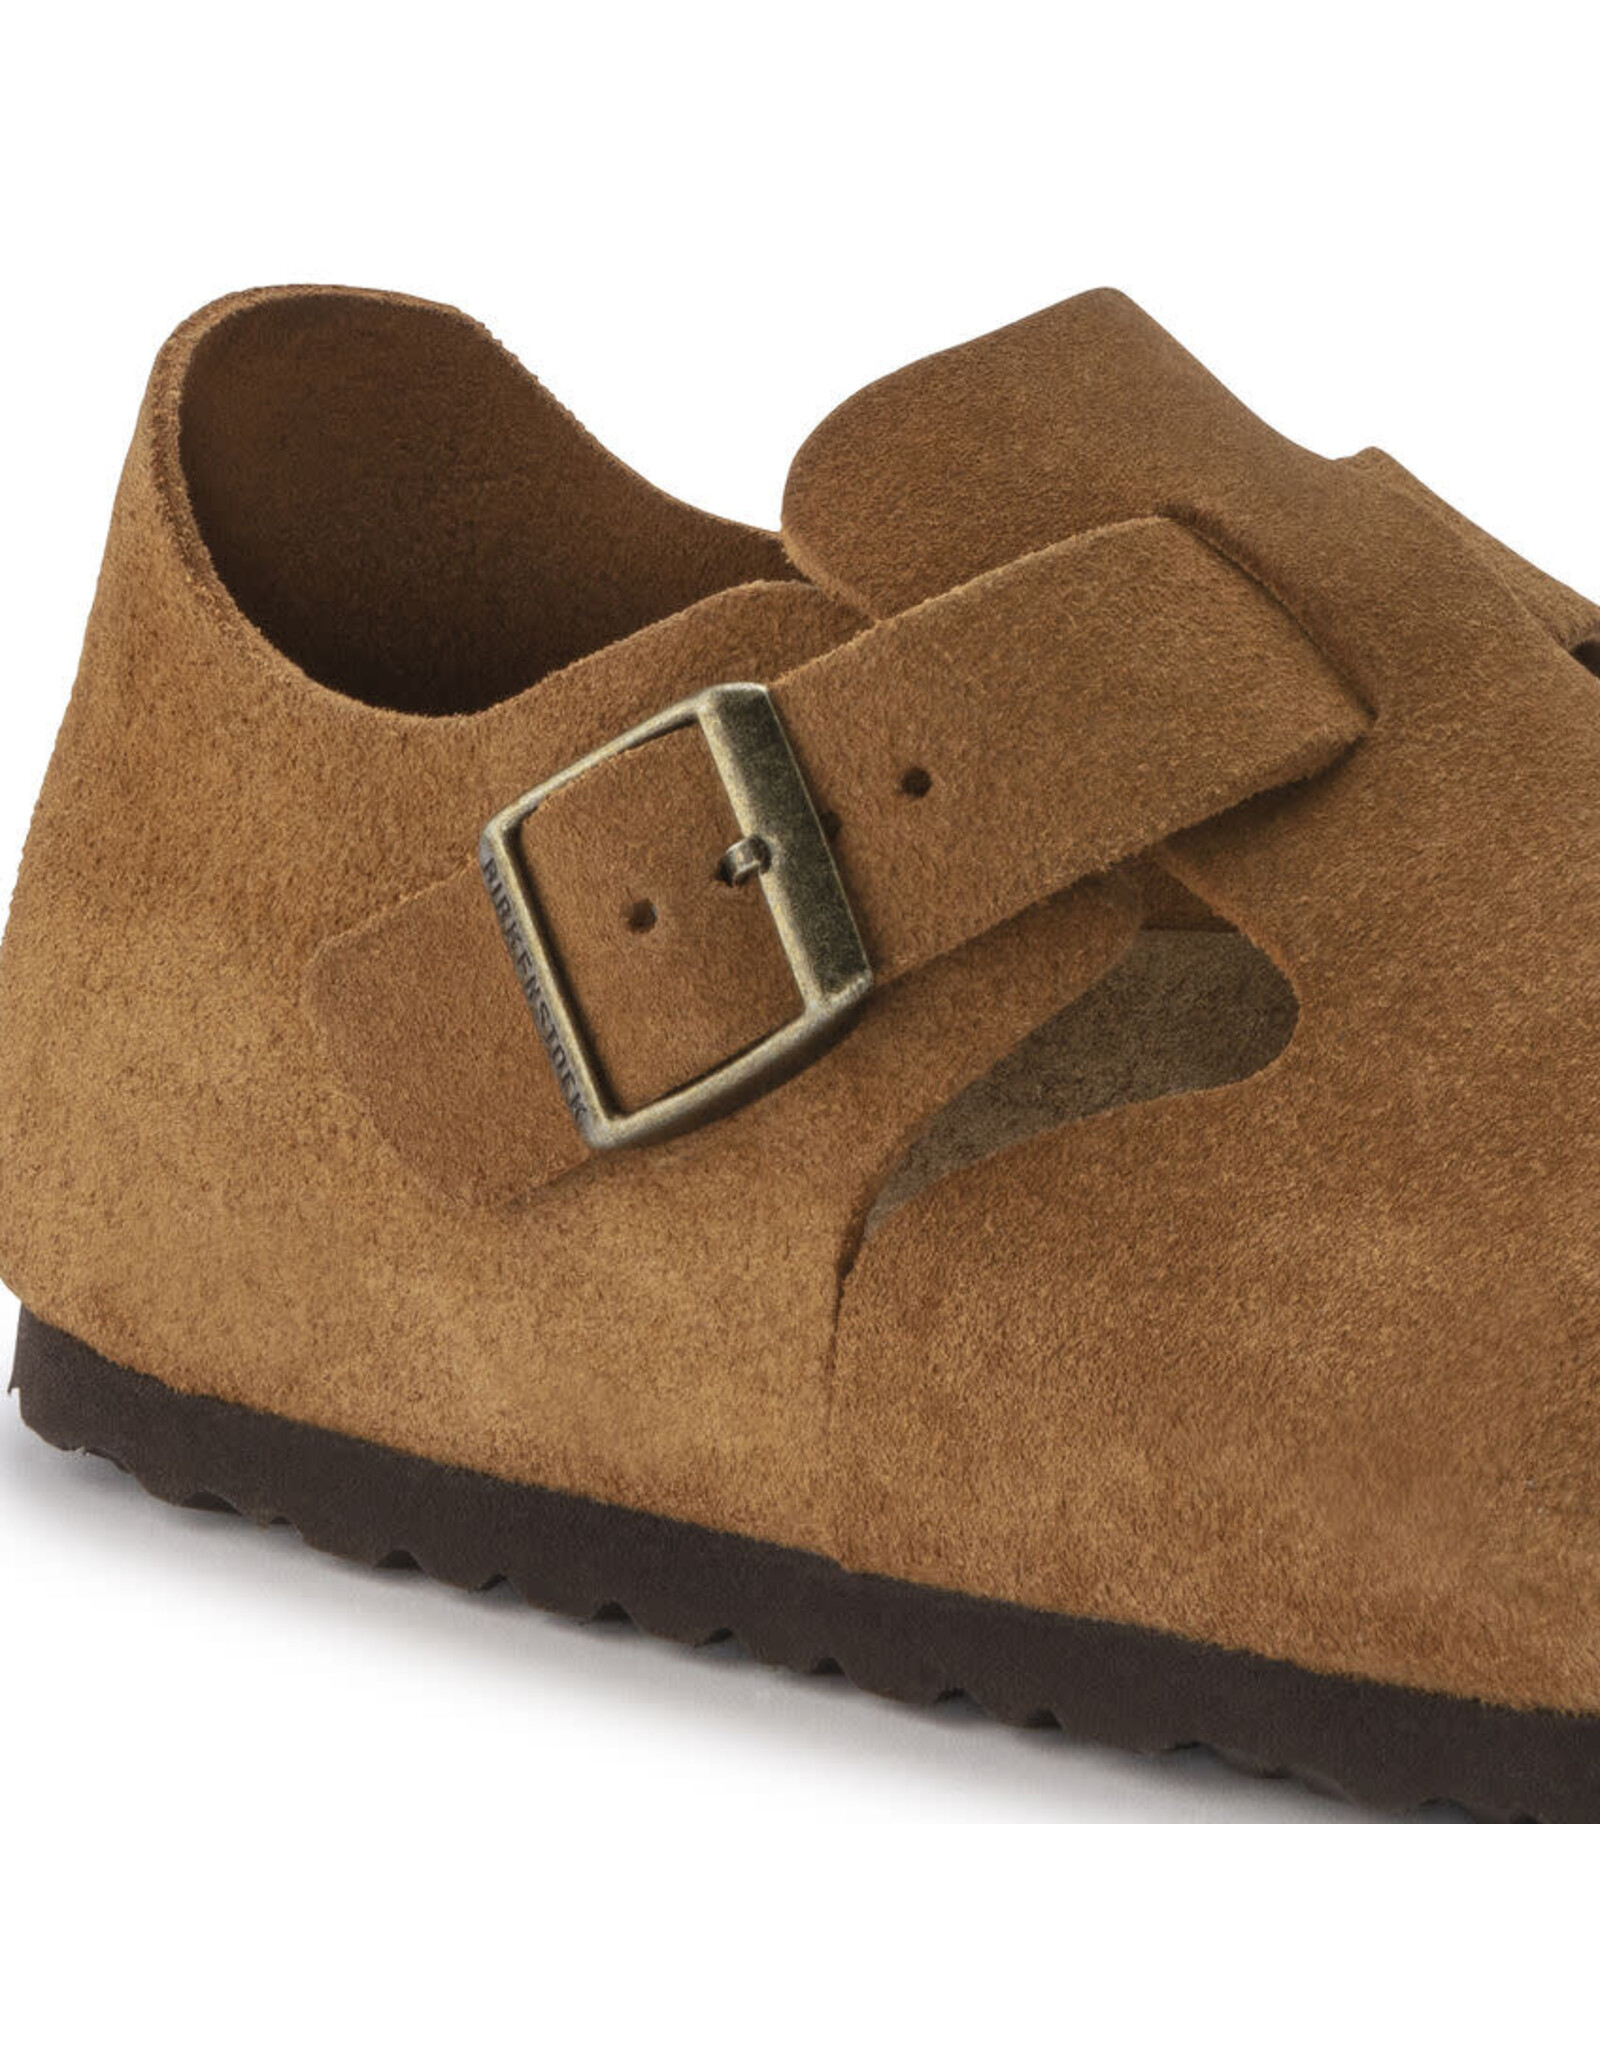 Birkenstock London Suede Leather Shoe